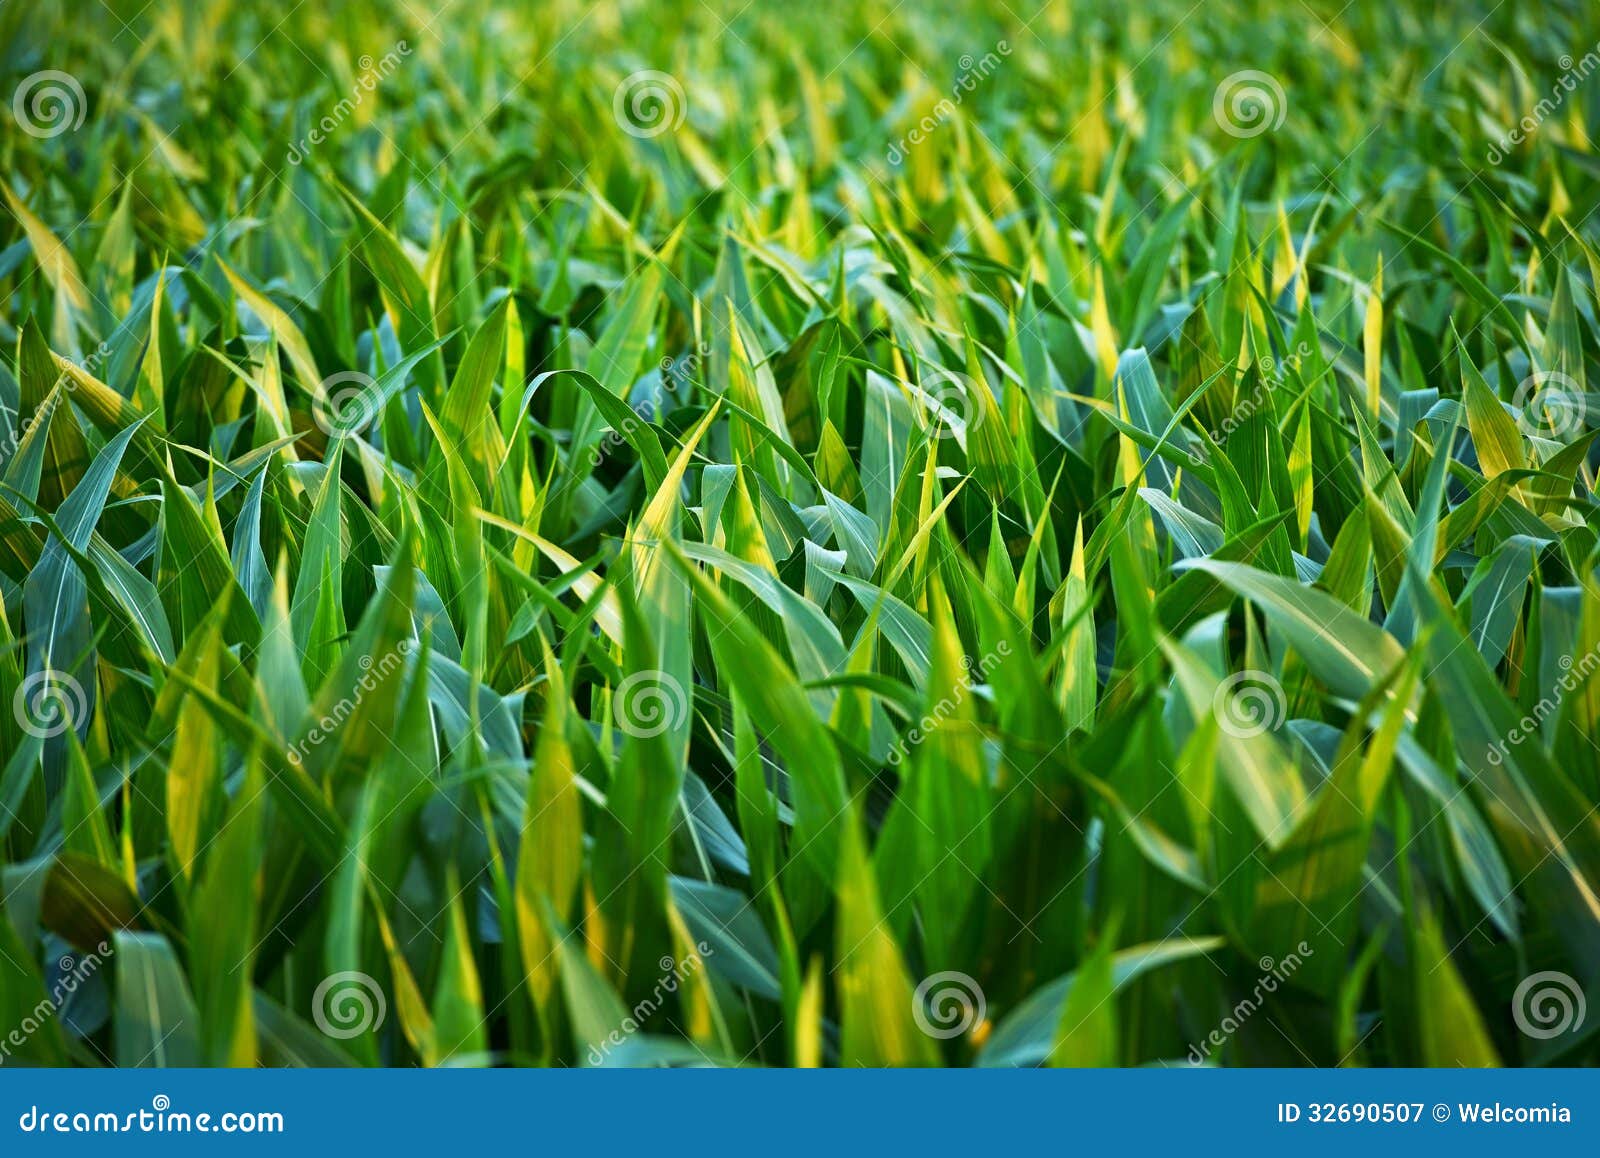 countryside corn fields